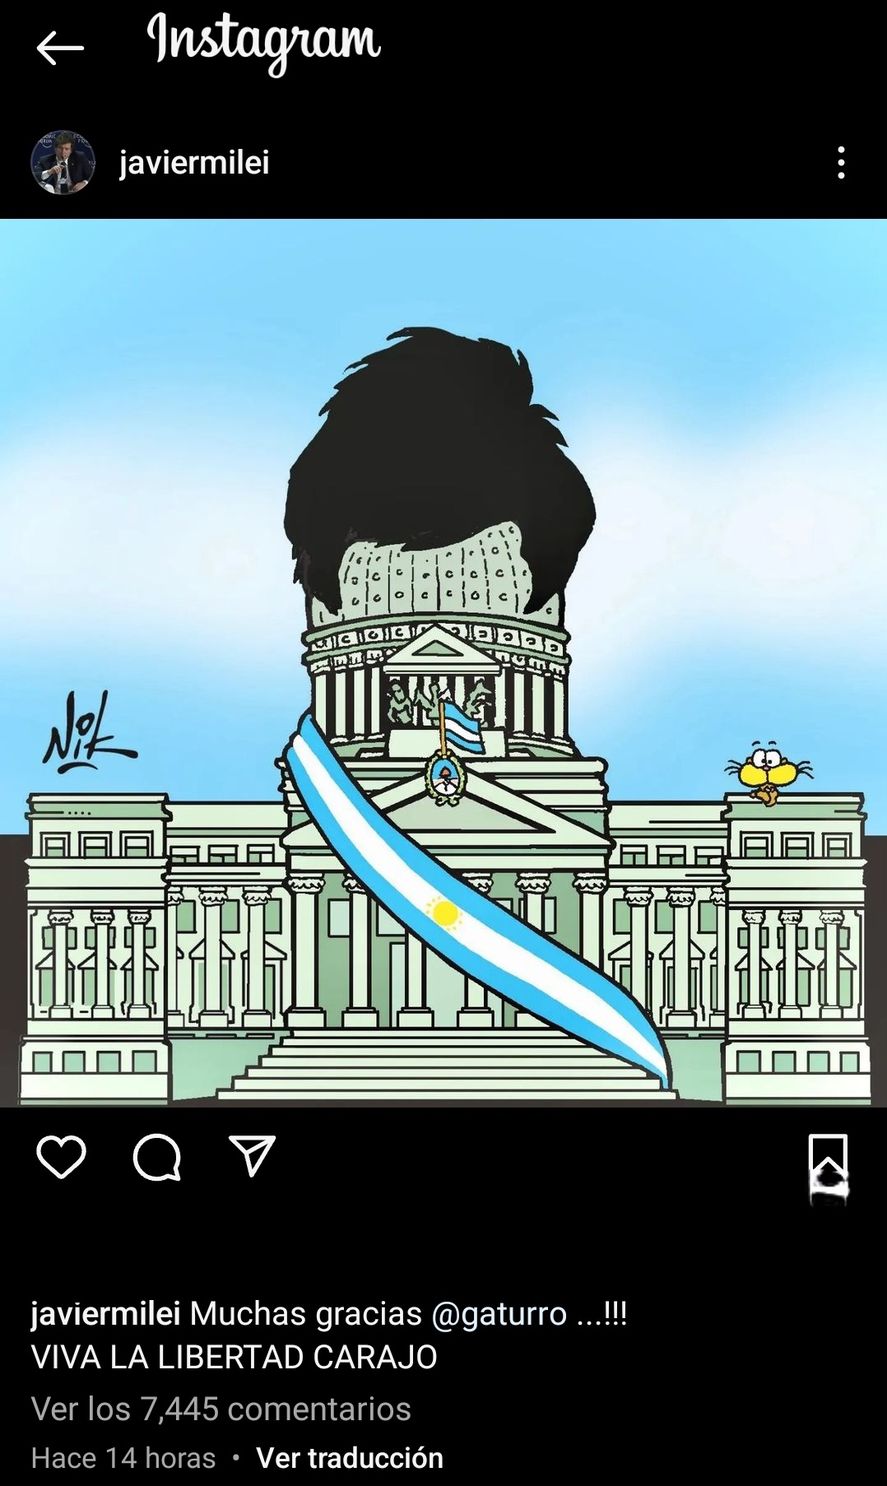 El agradecimiento de Javier Milei en Instagram a Nik por el dibujo. ¿Sabrá o le importará al presidente libertario el plagio que viola derechos de propiedad (privada) intelectual? 